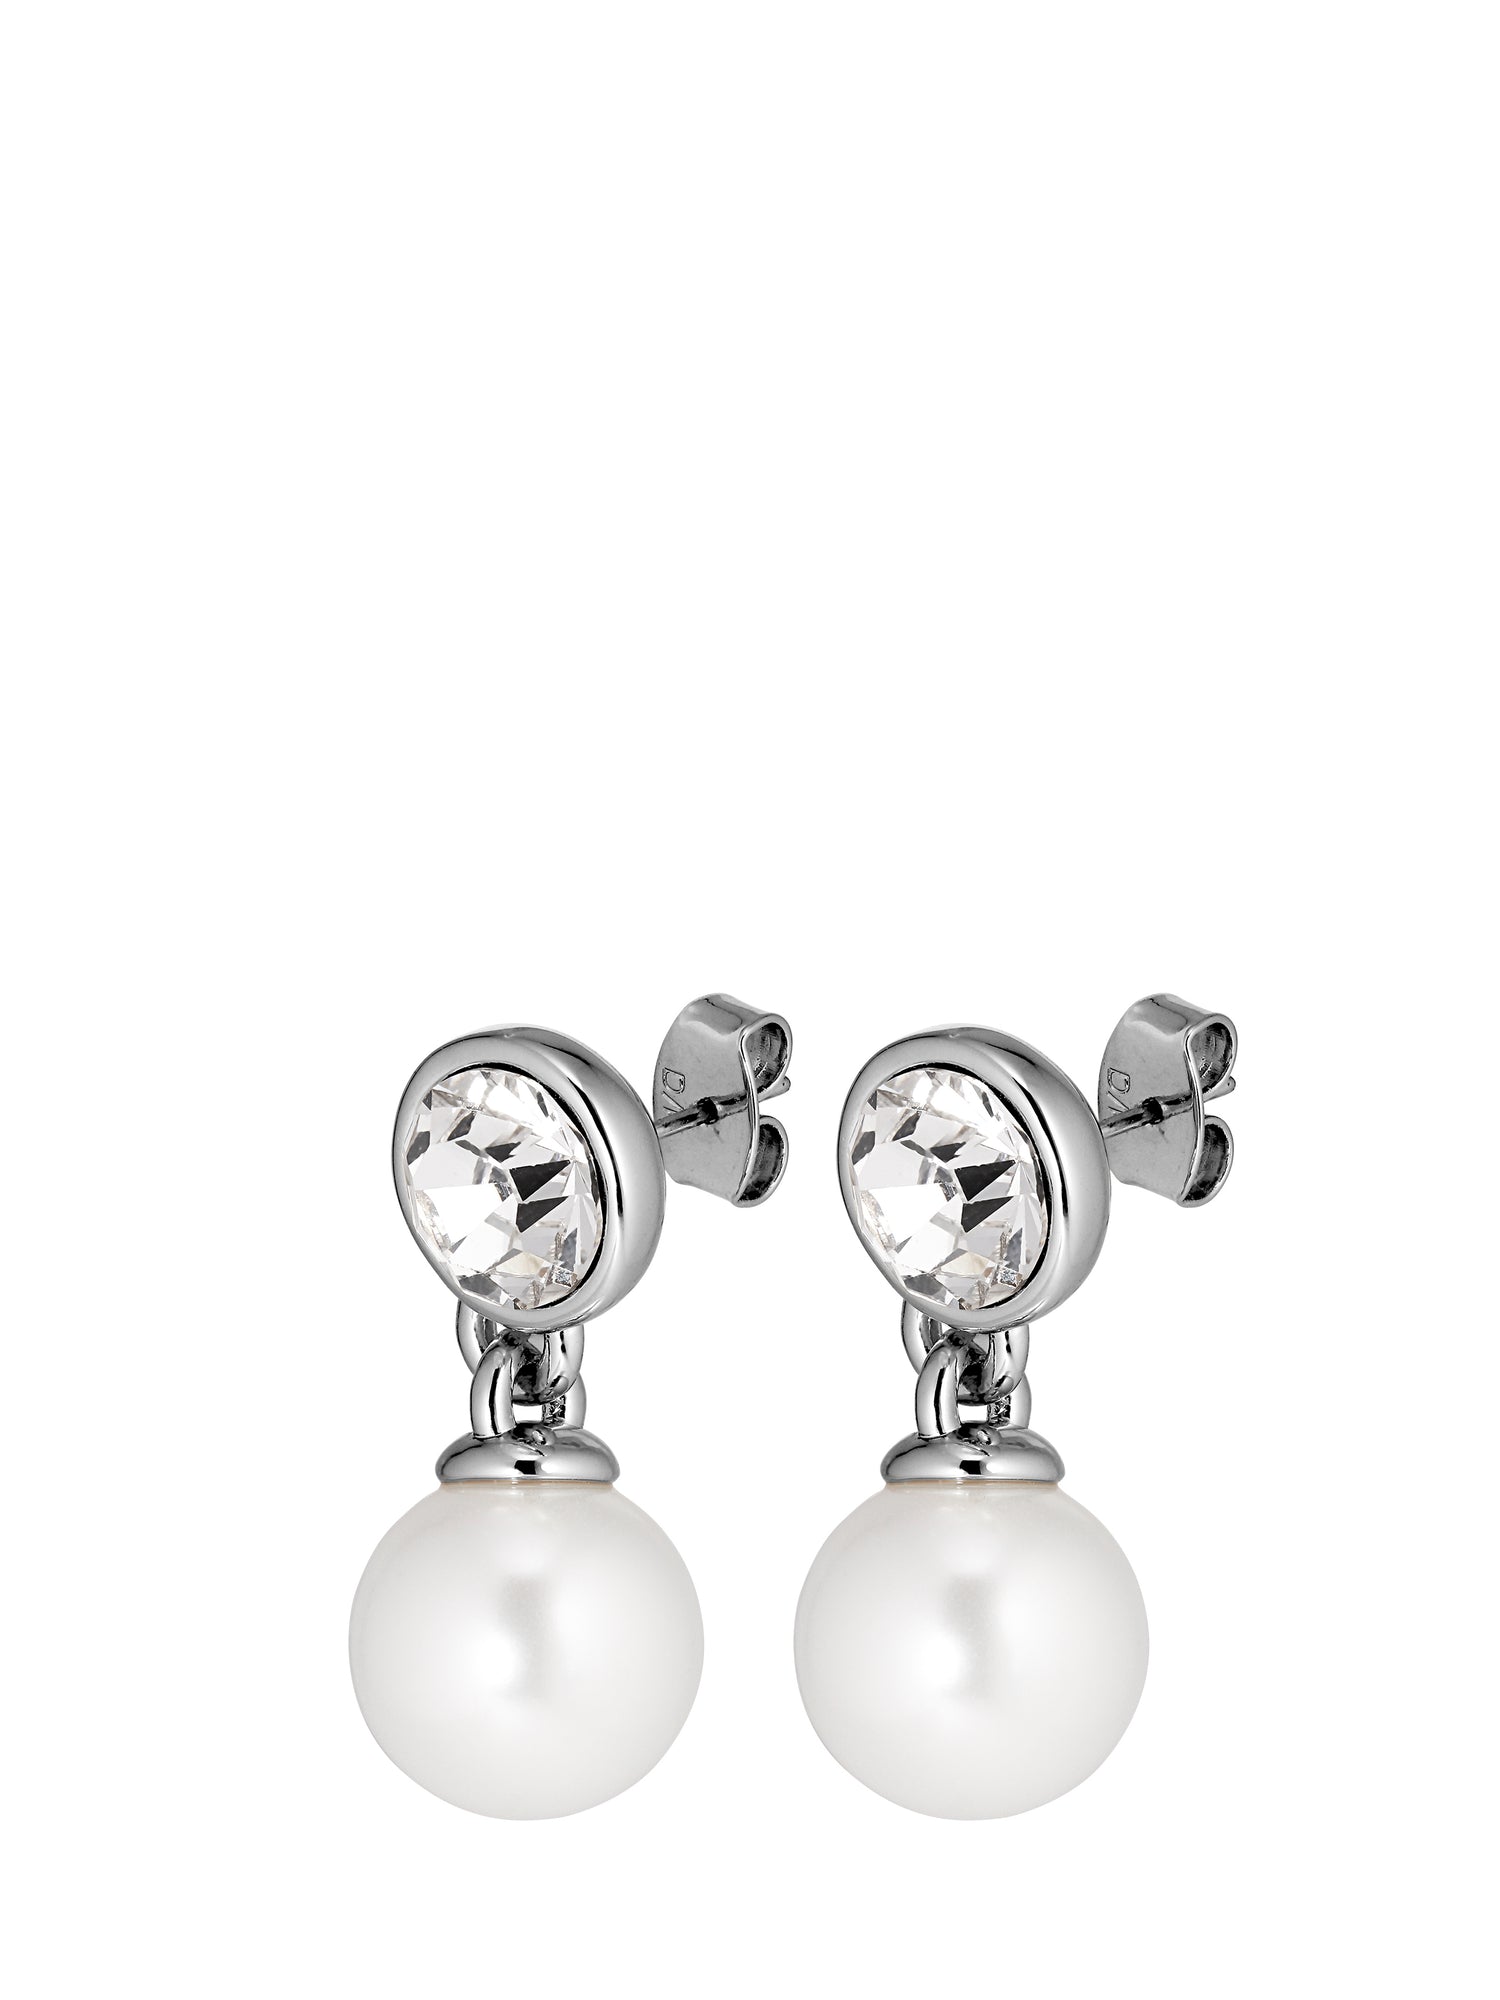 NETTE silver earrings, clear crystal - white pearl